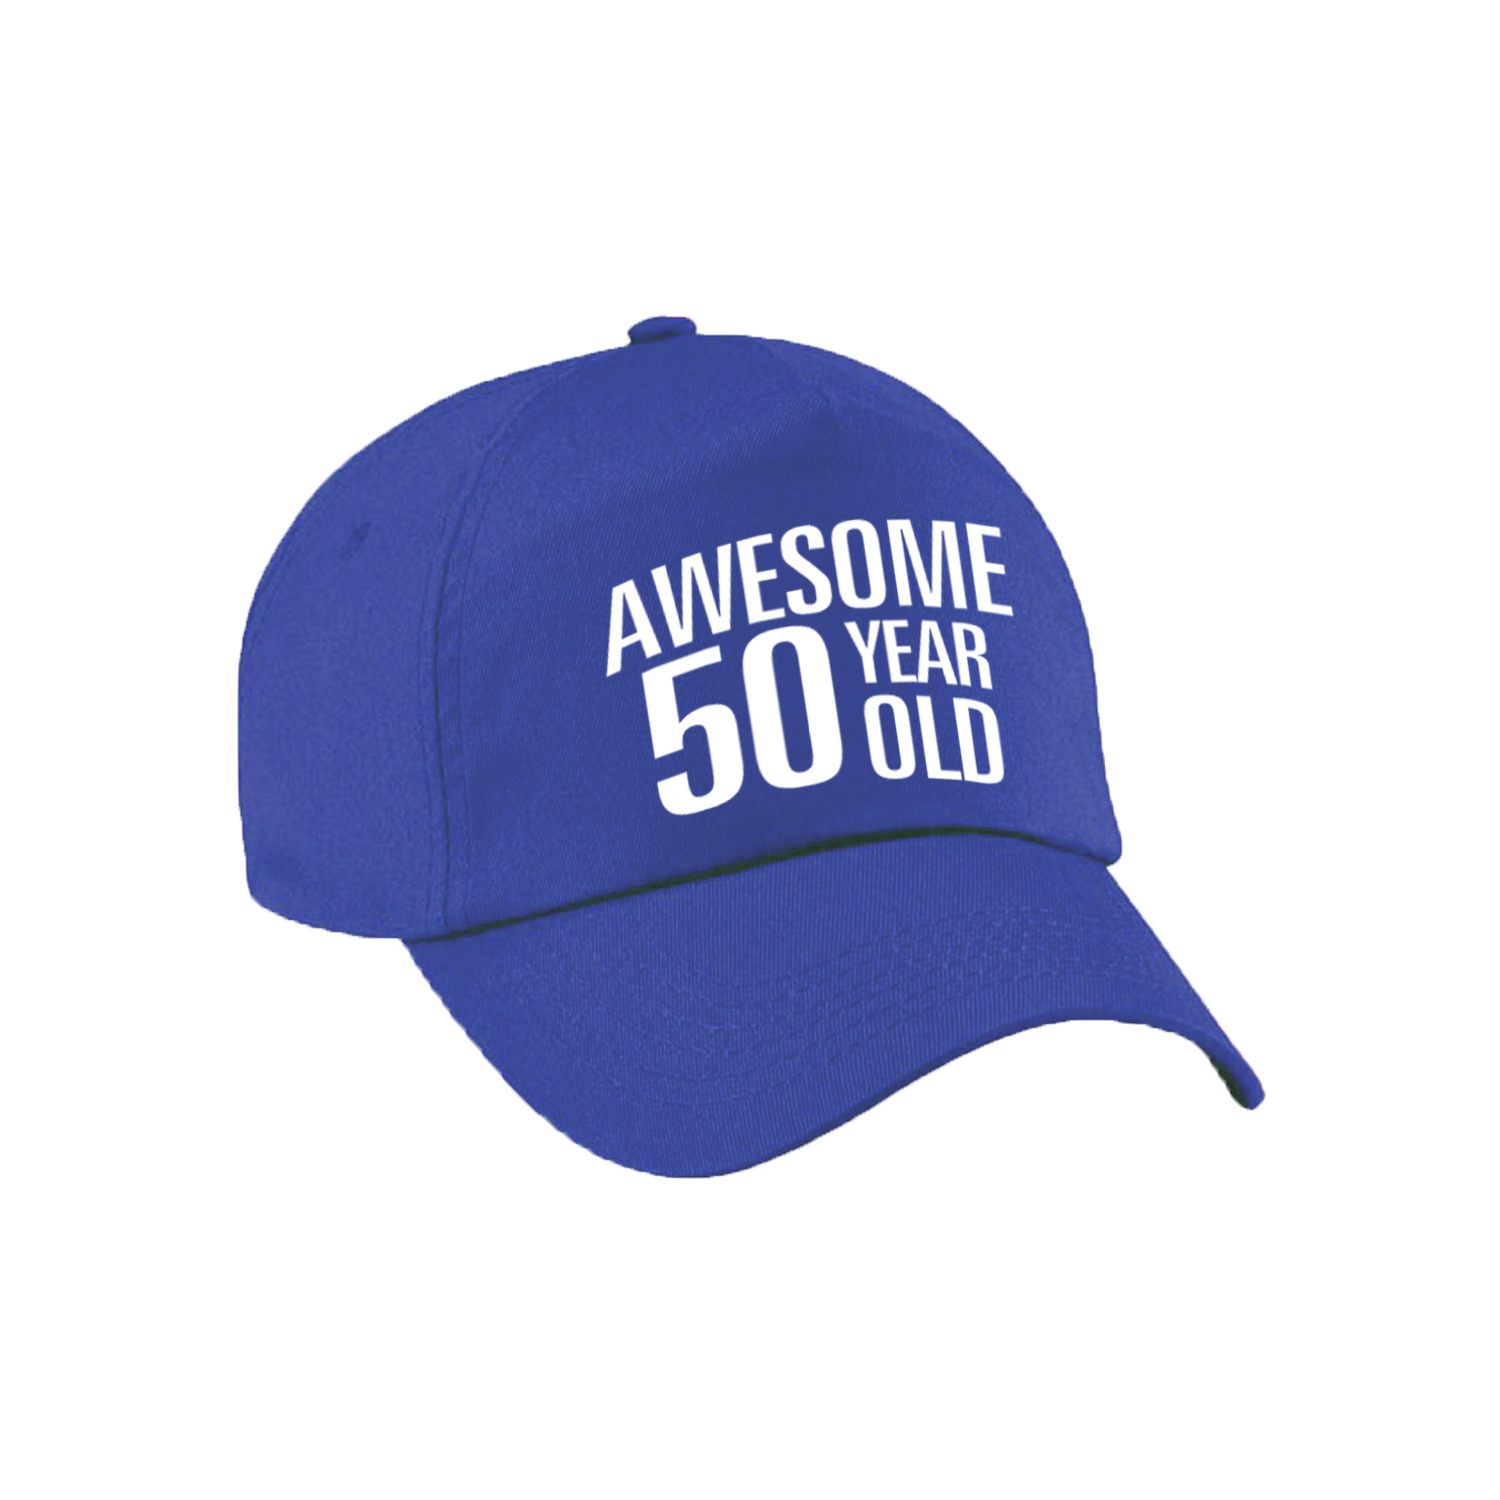 Awesome 50 year old verjaardag pet / cap blauw voor dames en heren